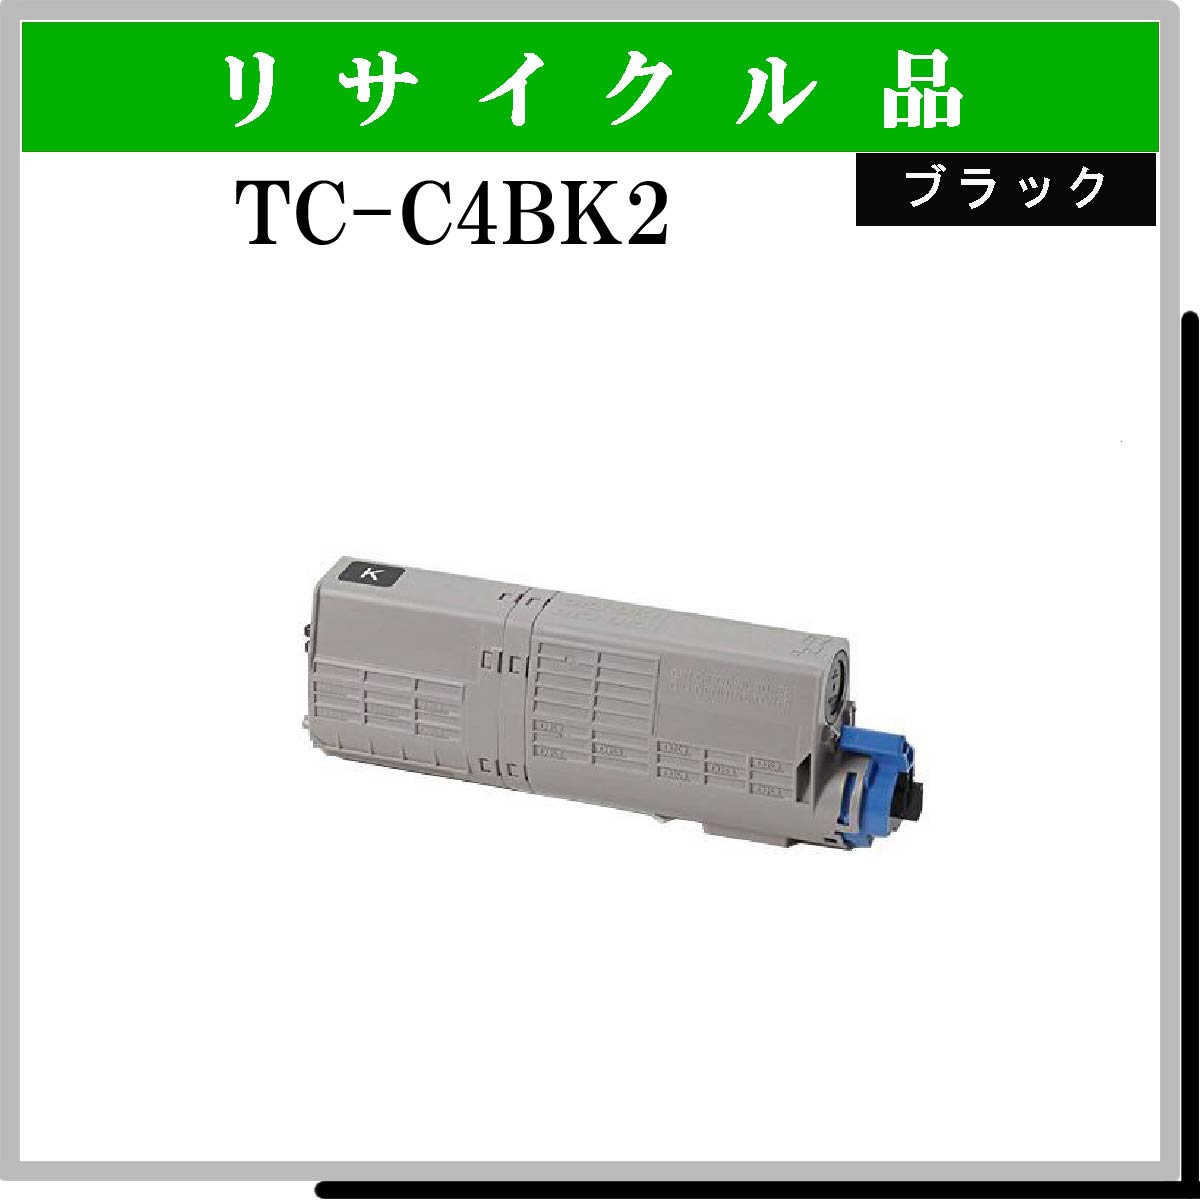 TC-C4BK2